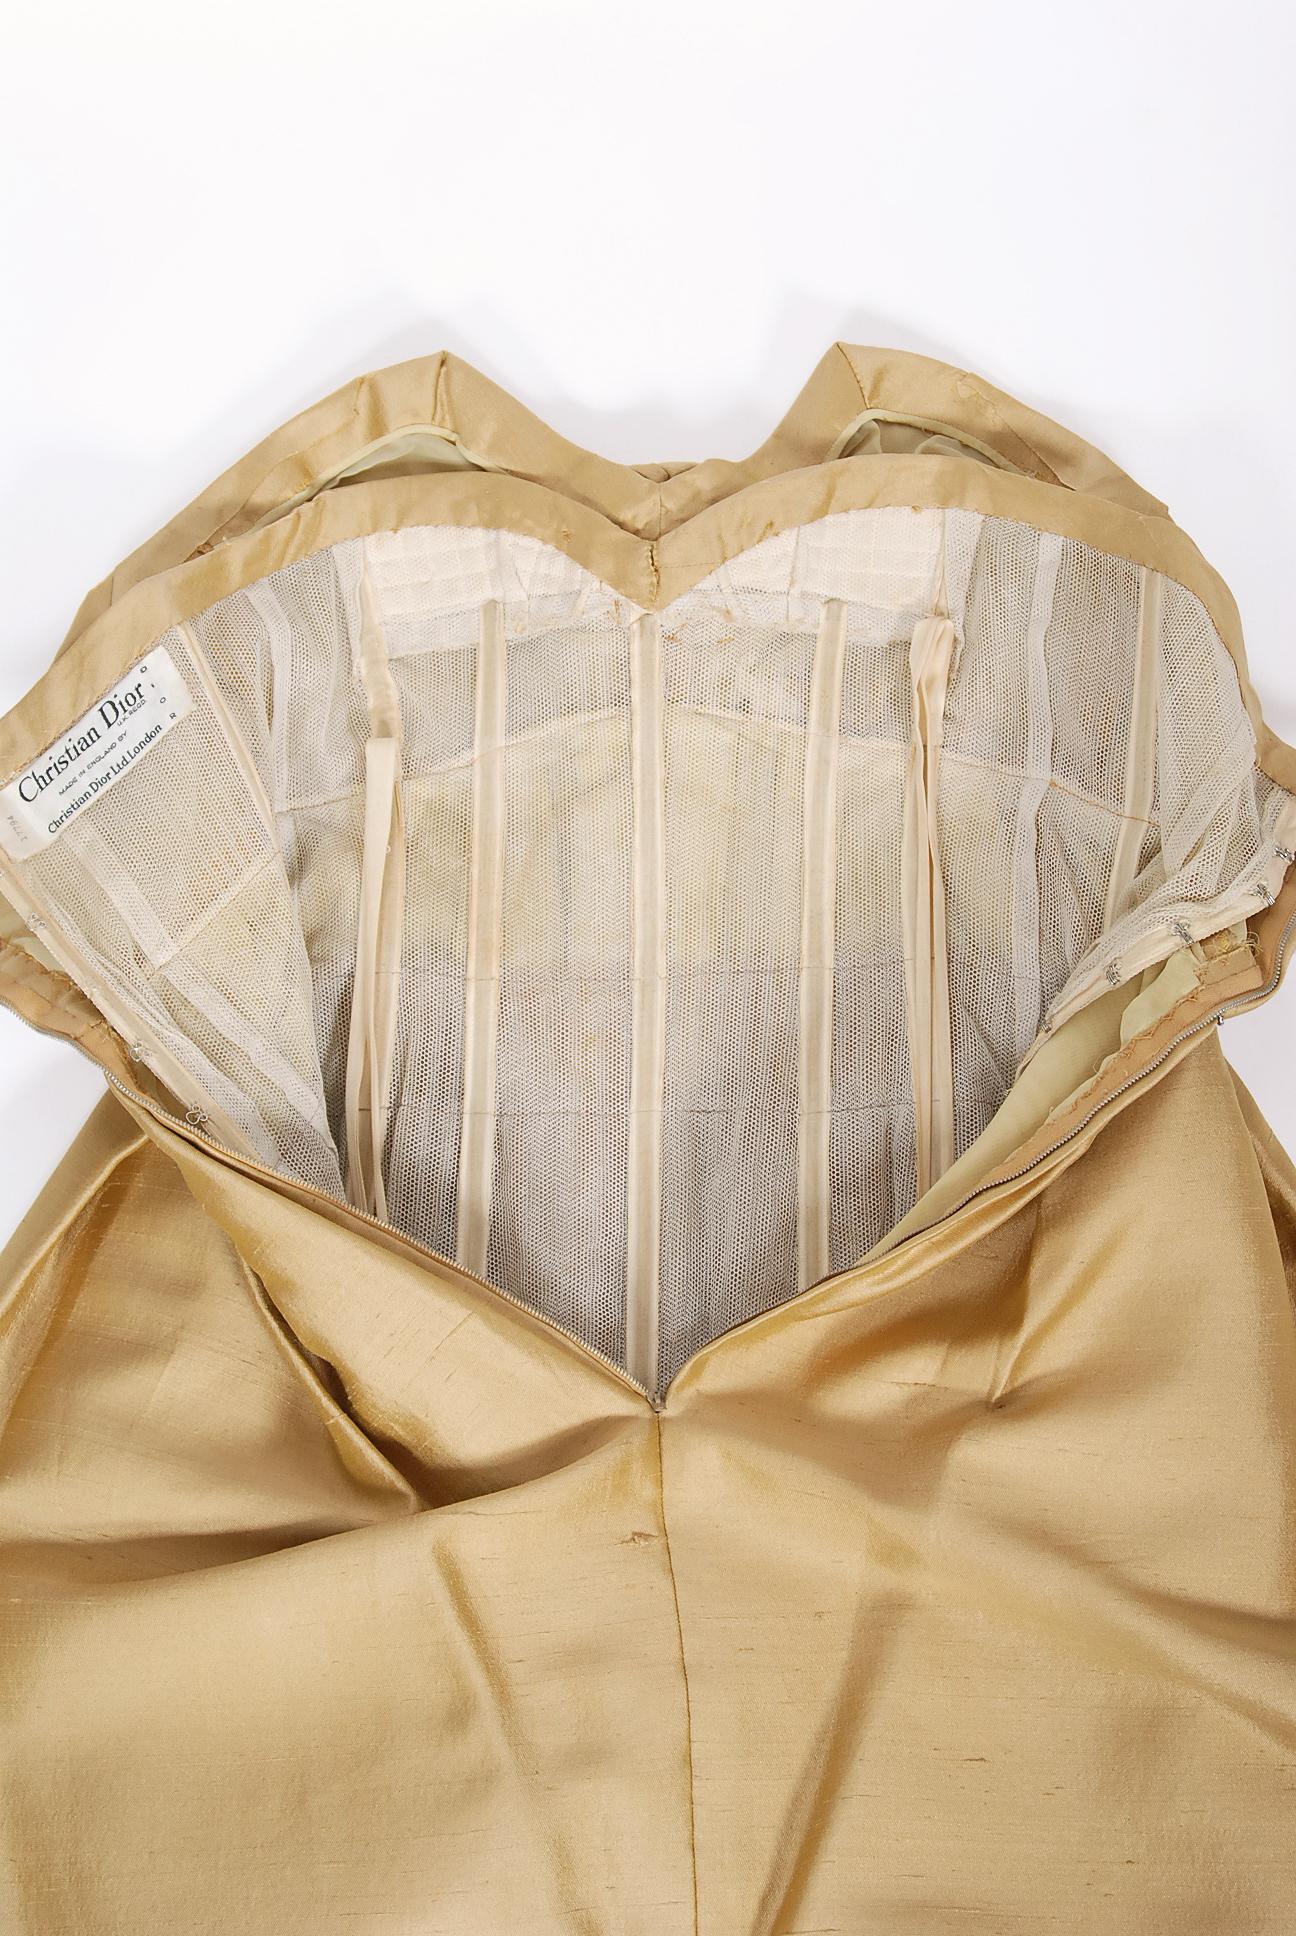 Vintage 1958 Yves Saint Laurent For Christian Dior Golden Silk Strapless Dress 6